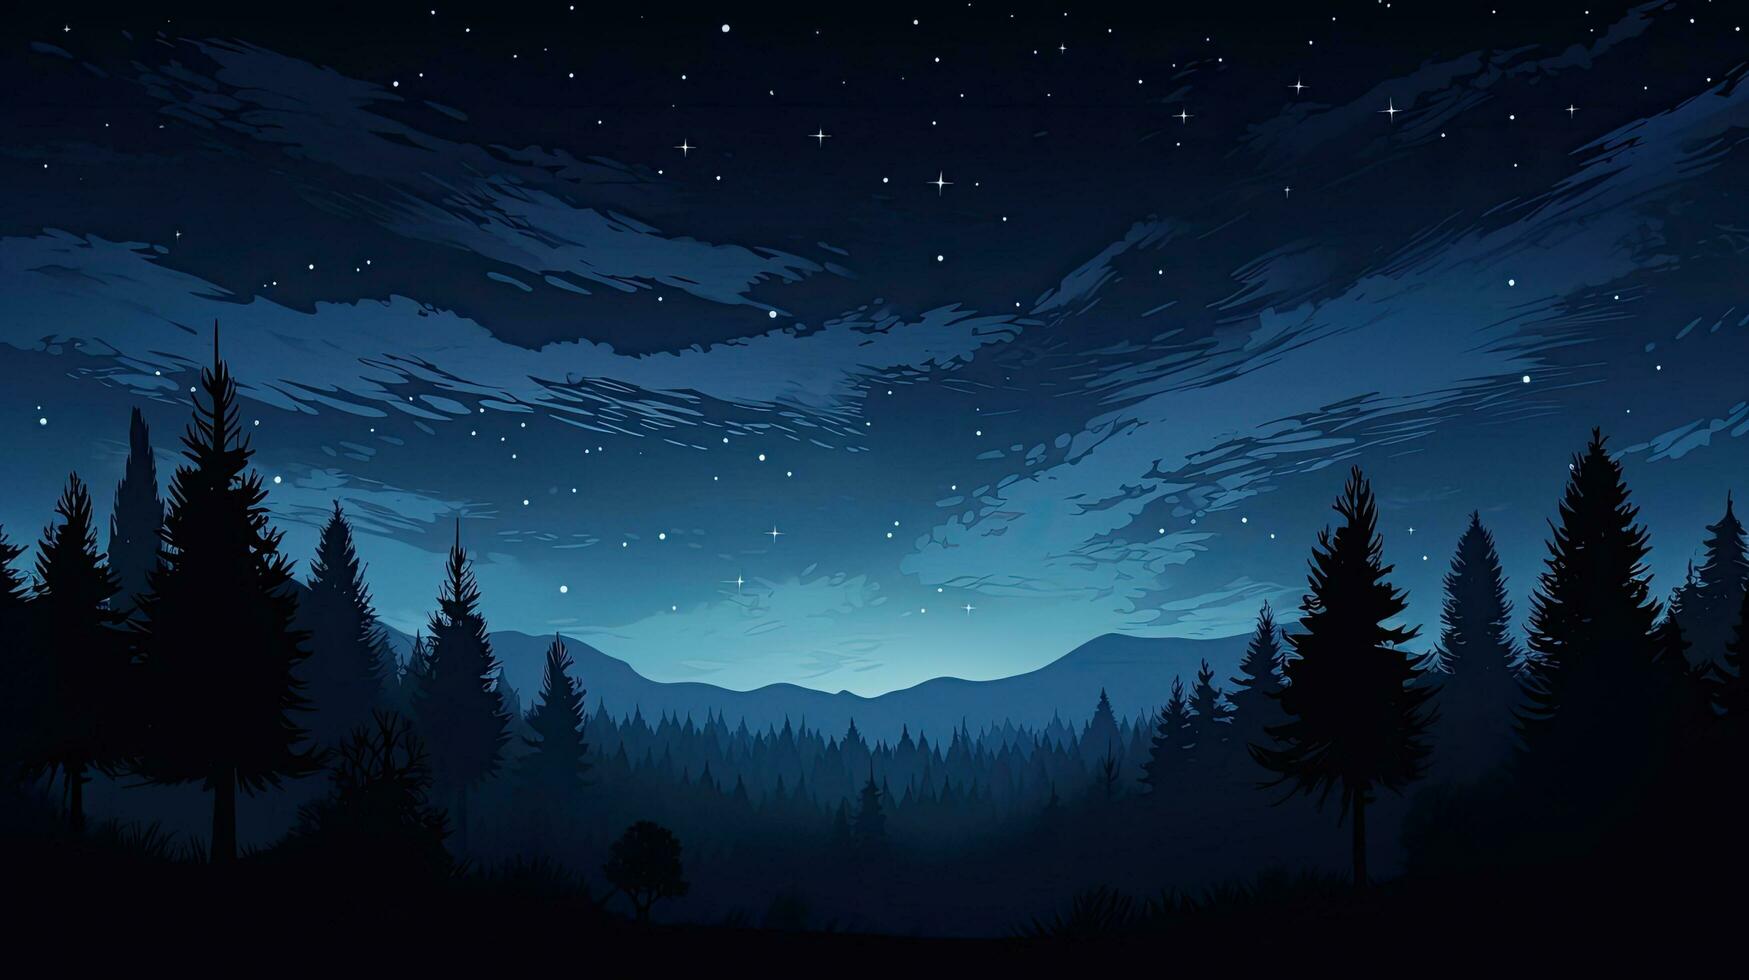 Luna brillante encima oscuro bosque silueta sereno al aire libre noche escena foto